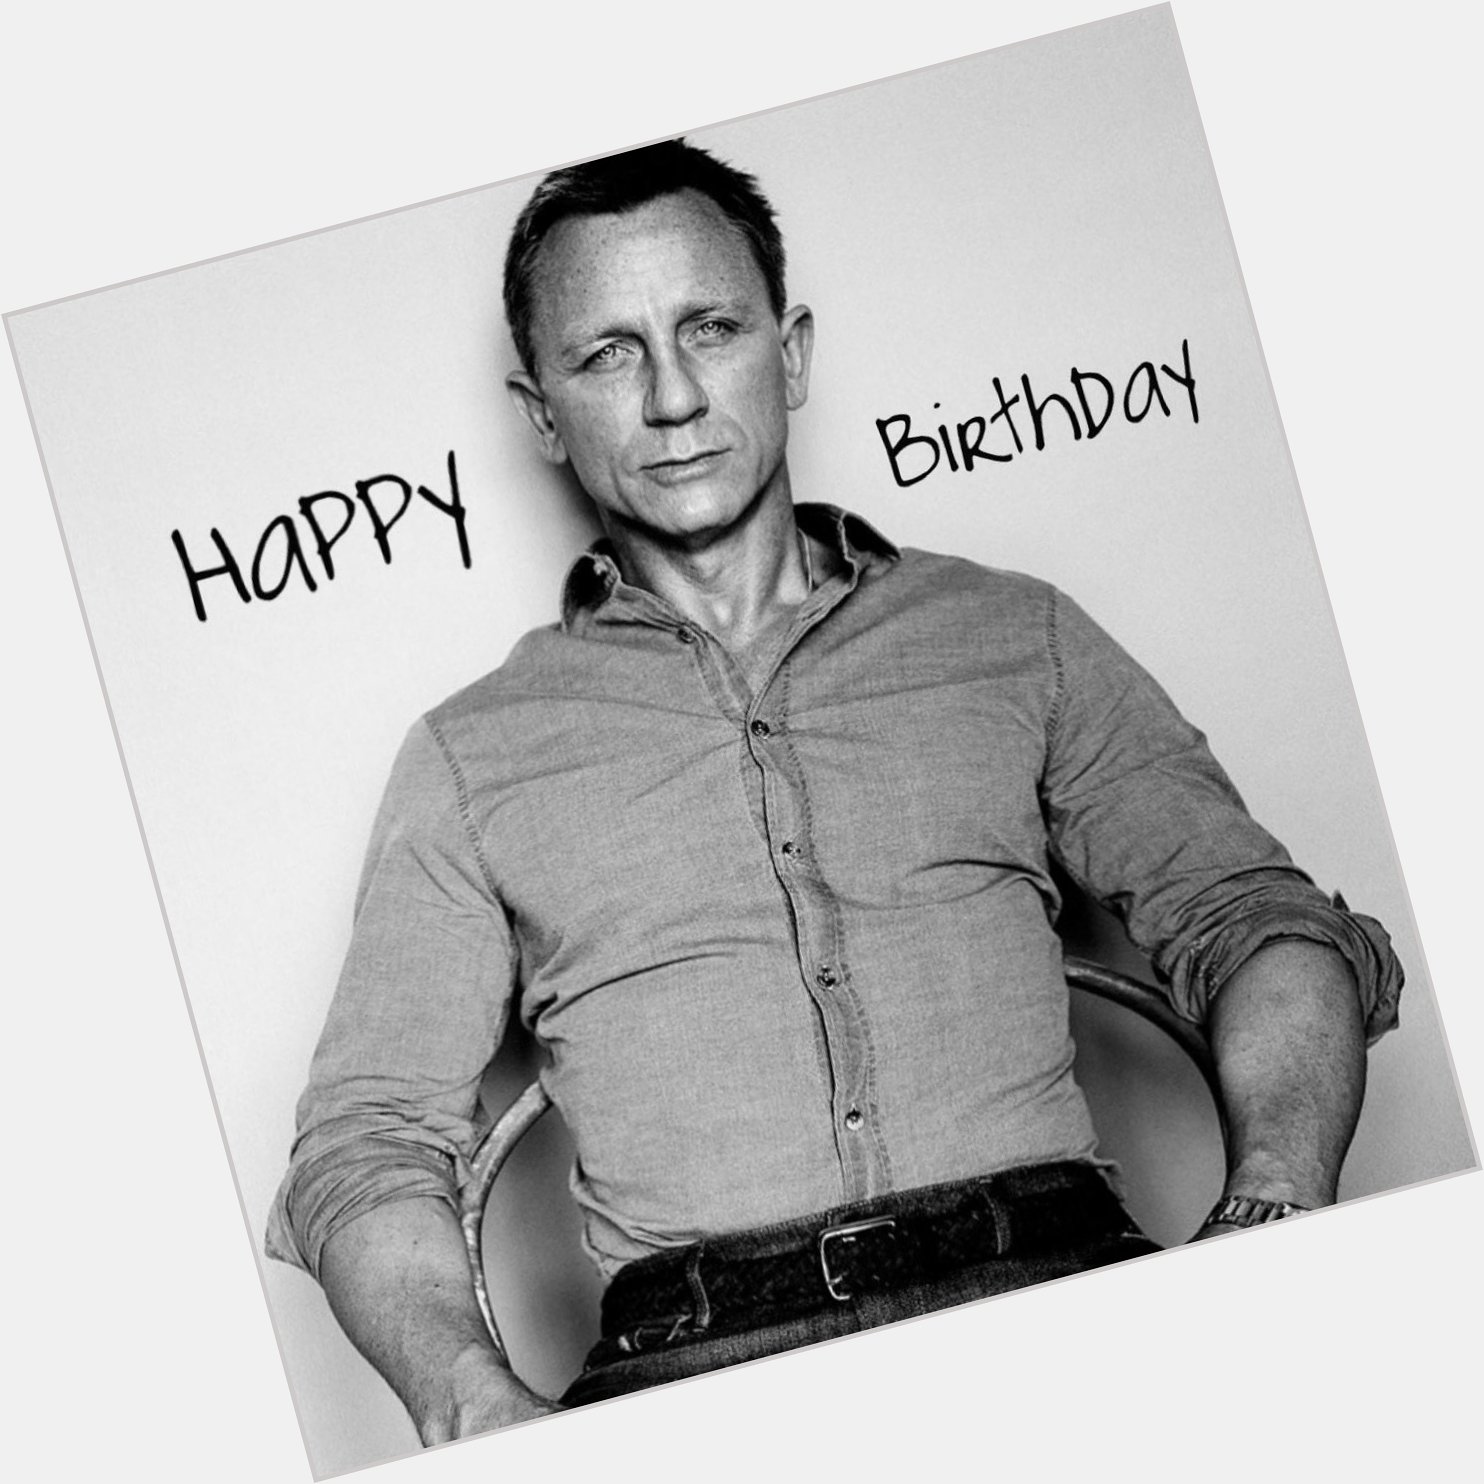 Happy 49th birthday, Mr Daniel Craig 